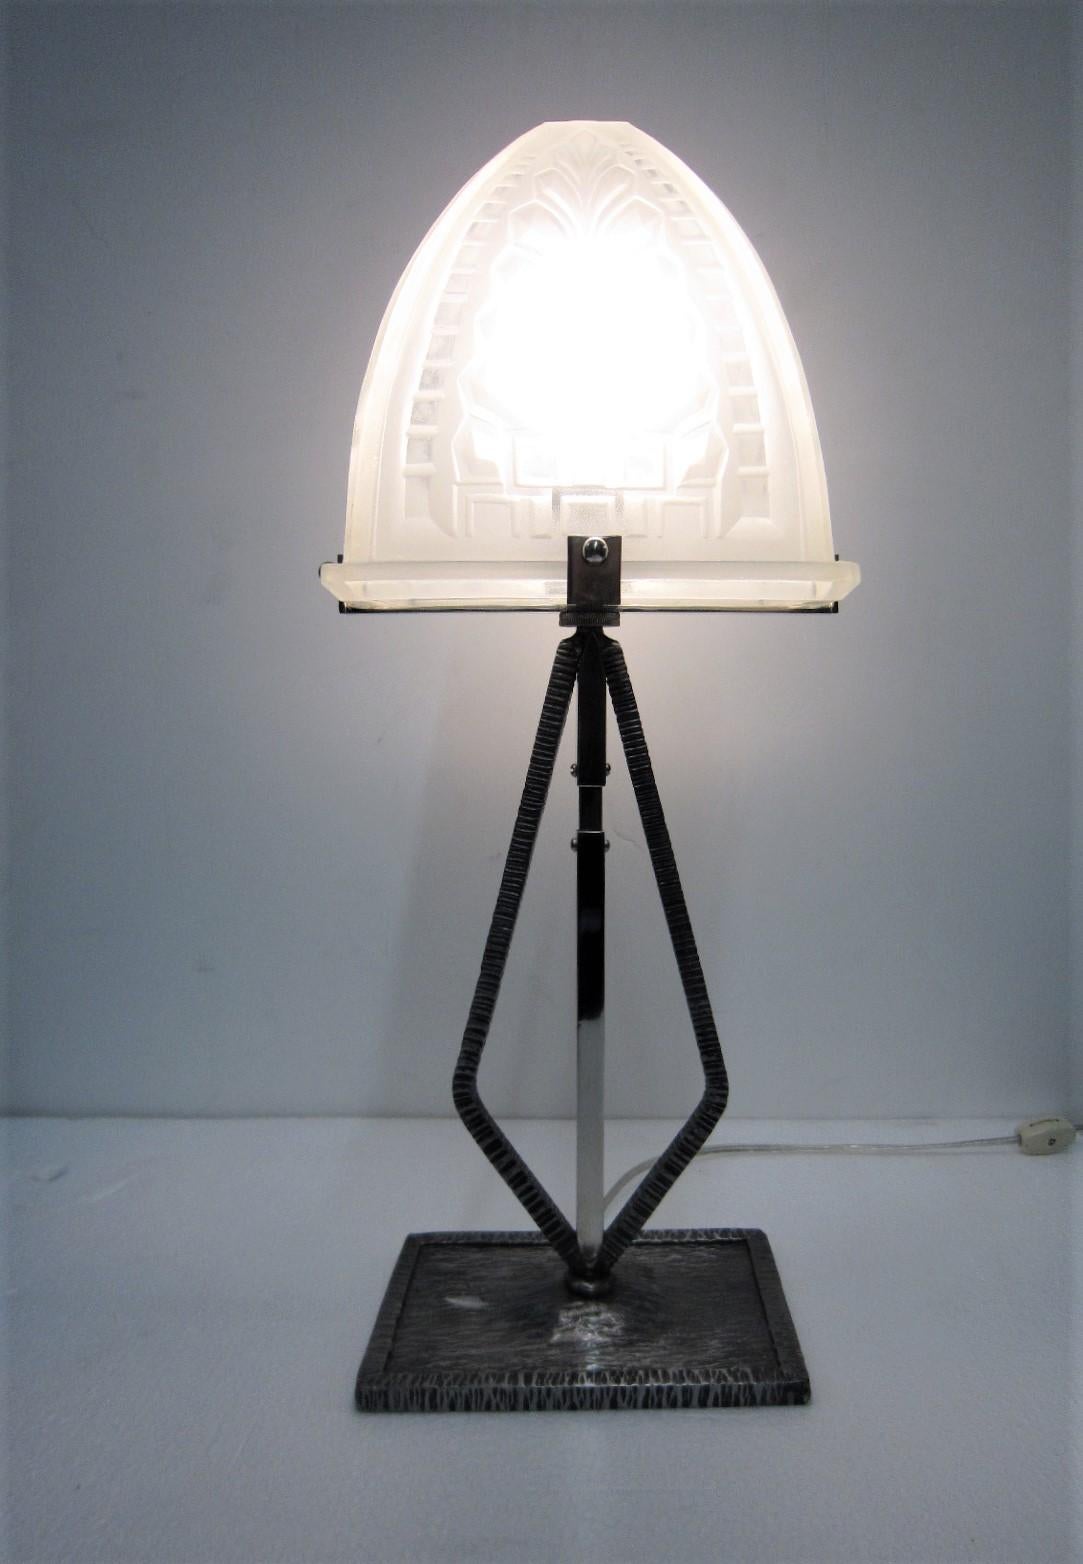 Lampe de table étroite de forme inhabituelle, de style Art déco ou minimaliste français, dotée d'un verre d'art français fortement moulé.
Abat-jour trapézoïdal en forme de fougère stylisée et de motifs géométriques, reposant sur une base en fer